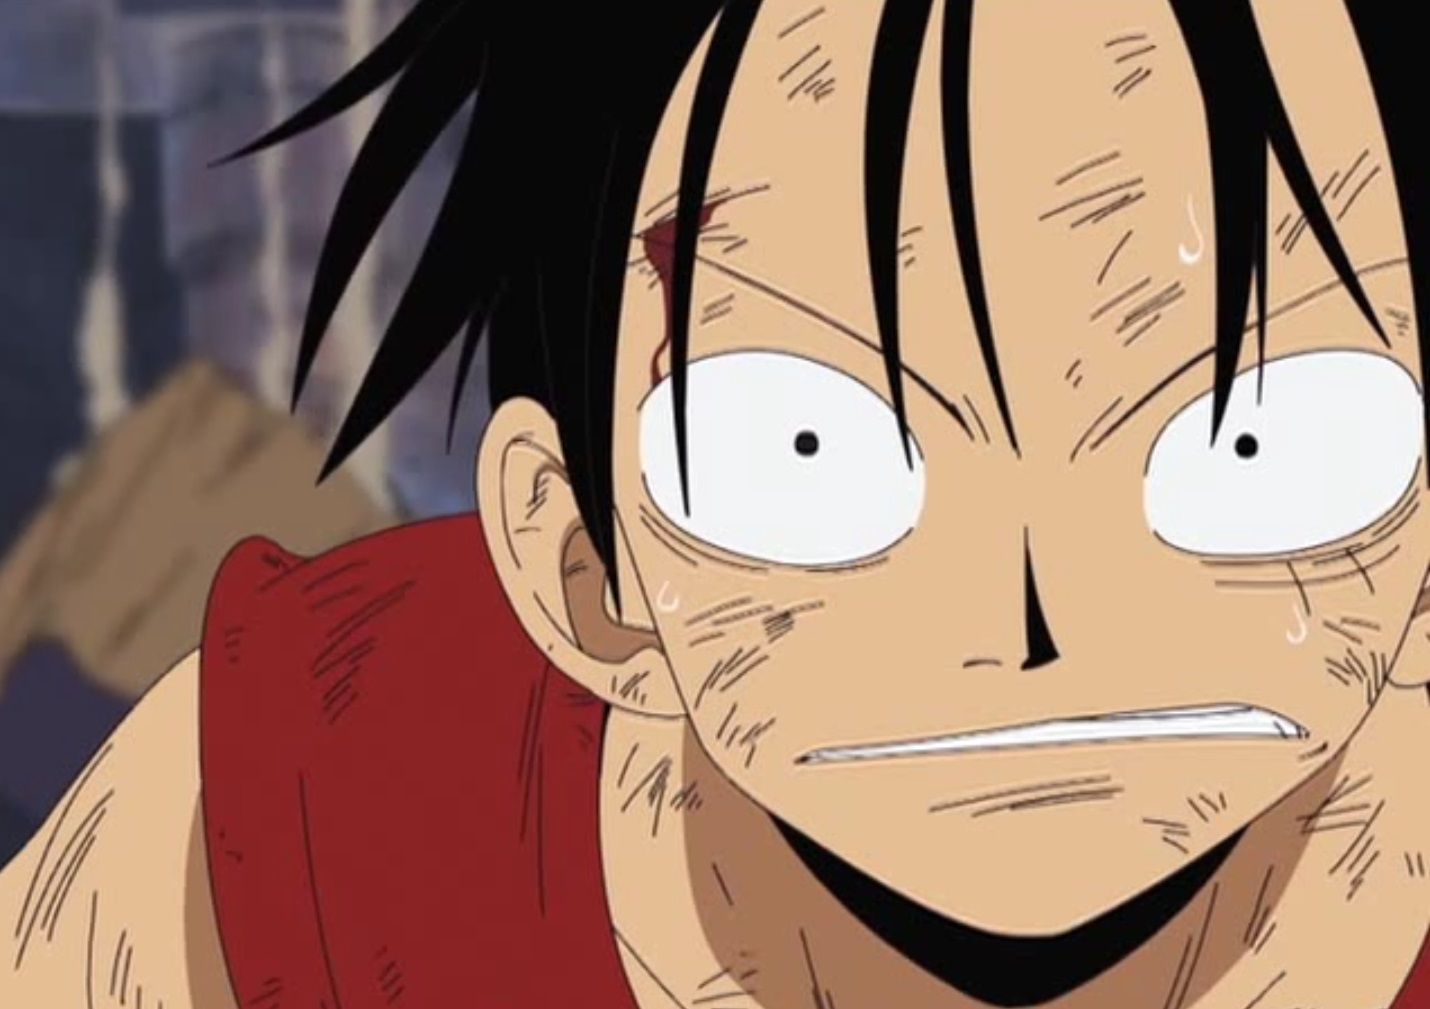 Luffy looks intense in Alabasta from One Piece